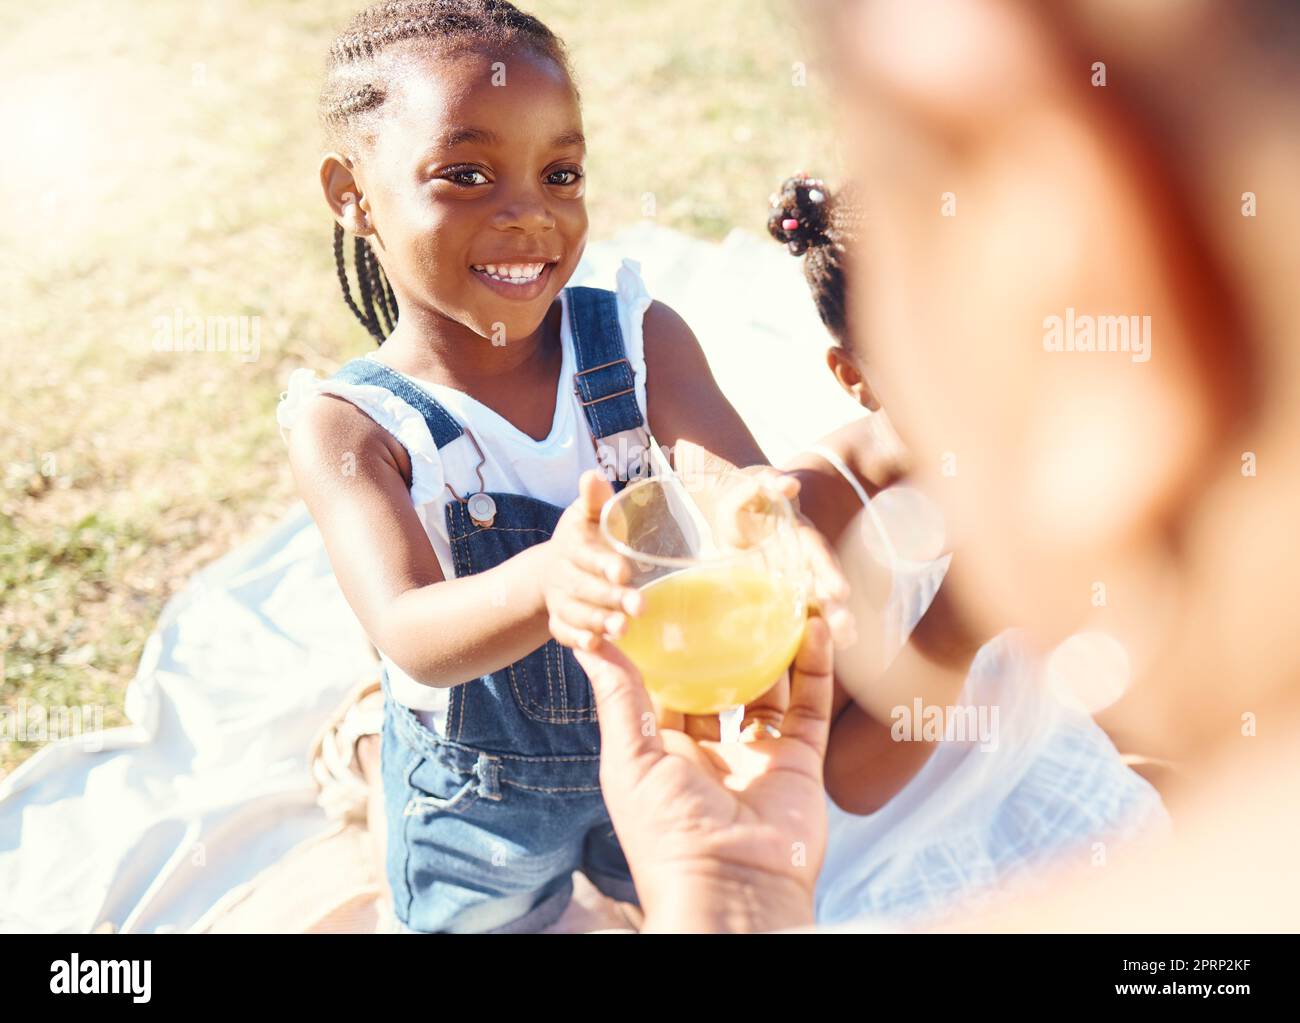 Glückliches Mädchen, Saft und Lächeln in der Familie Picknick Spaß und Freude in Glück an einem warmen Sommertag in der Natur. Schwarzes Kind lächelt für frisches kaltes, gesundes Getränk im Freien mit Eltern und Geschwistern Stockfoto